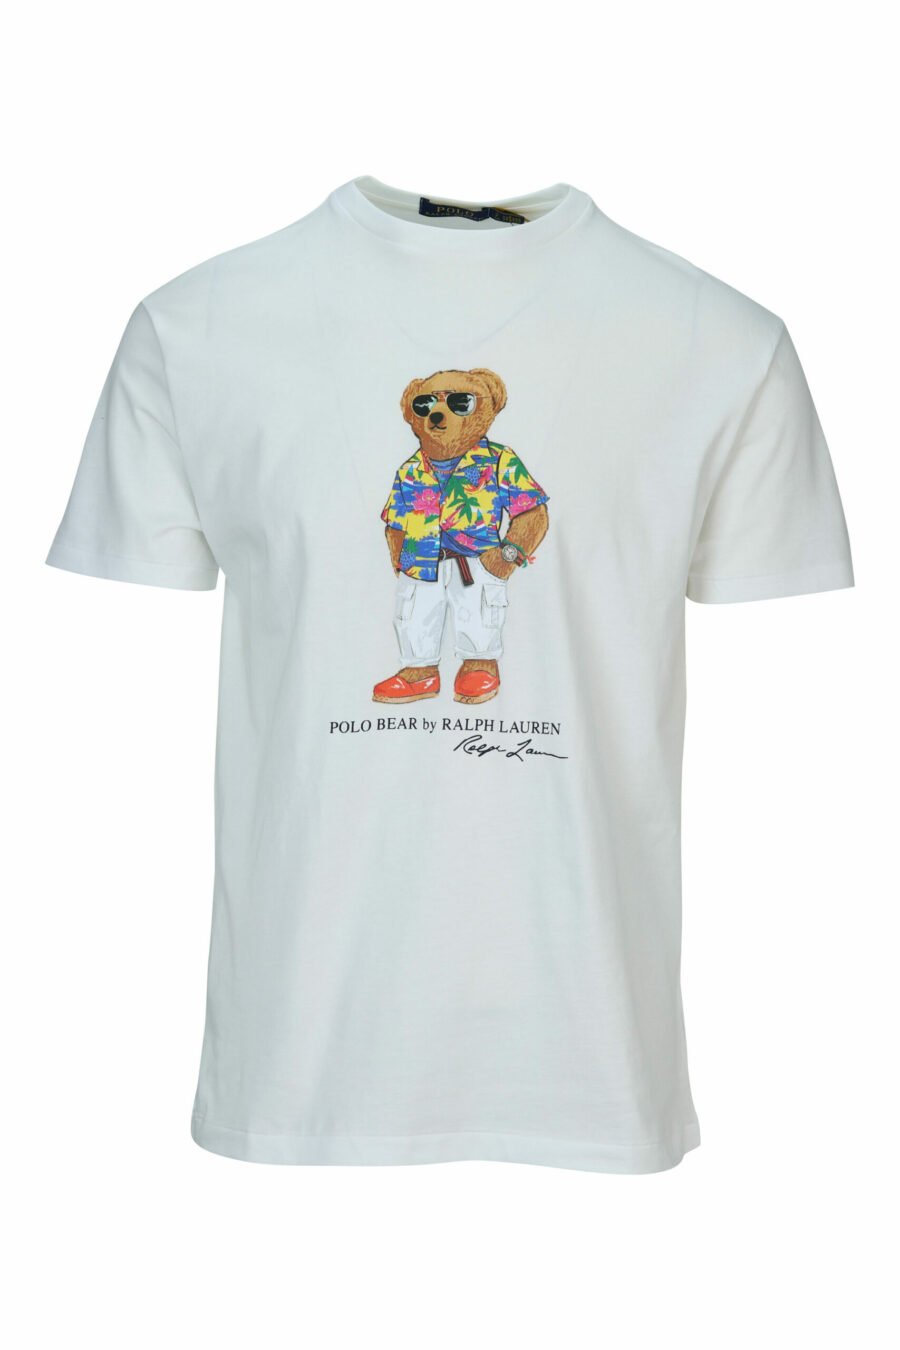 T-shirt branca com maxilogo "polo bear" roupa de praia - 3616535843479 scaled